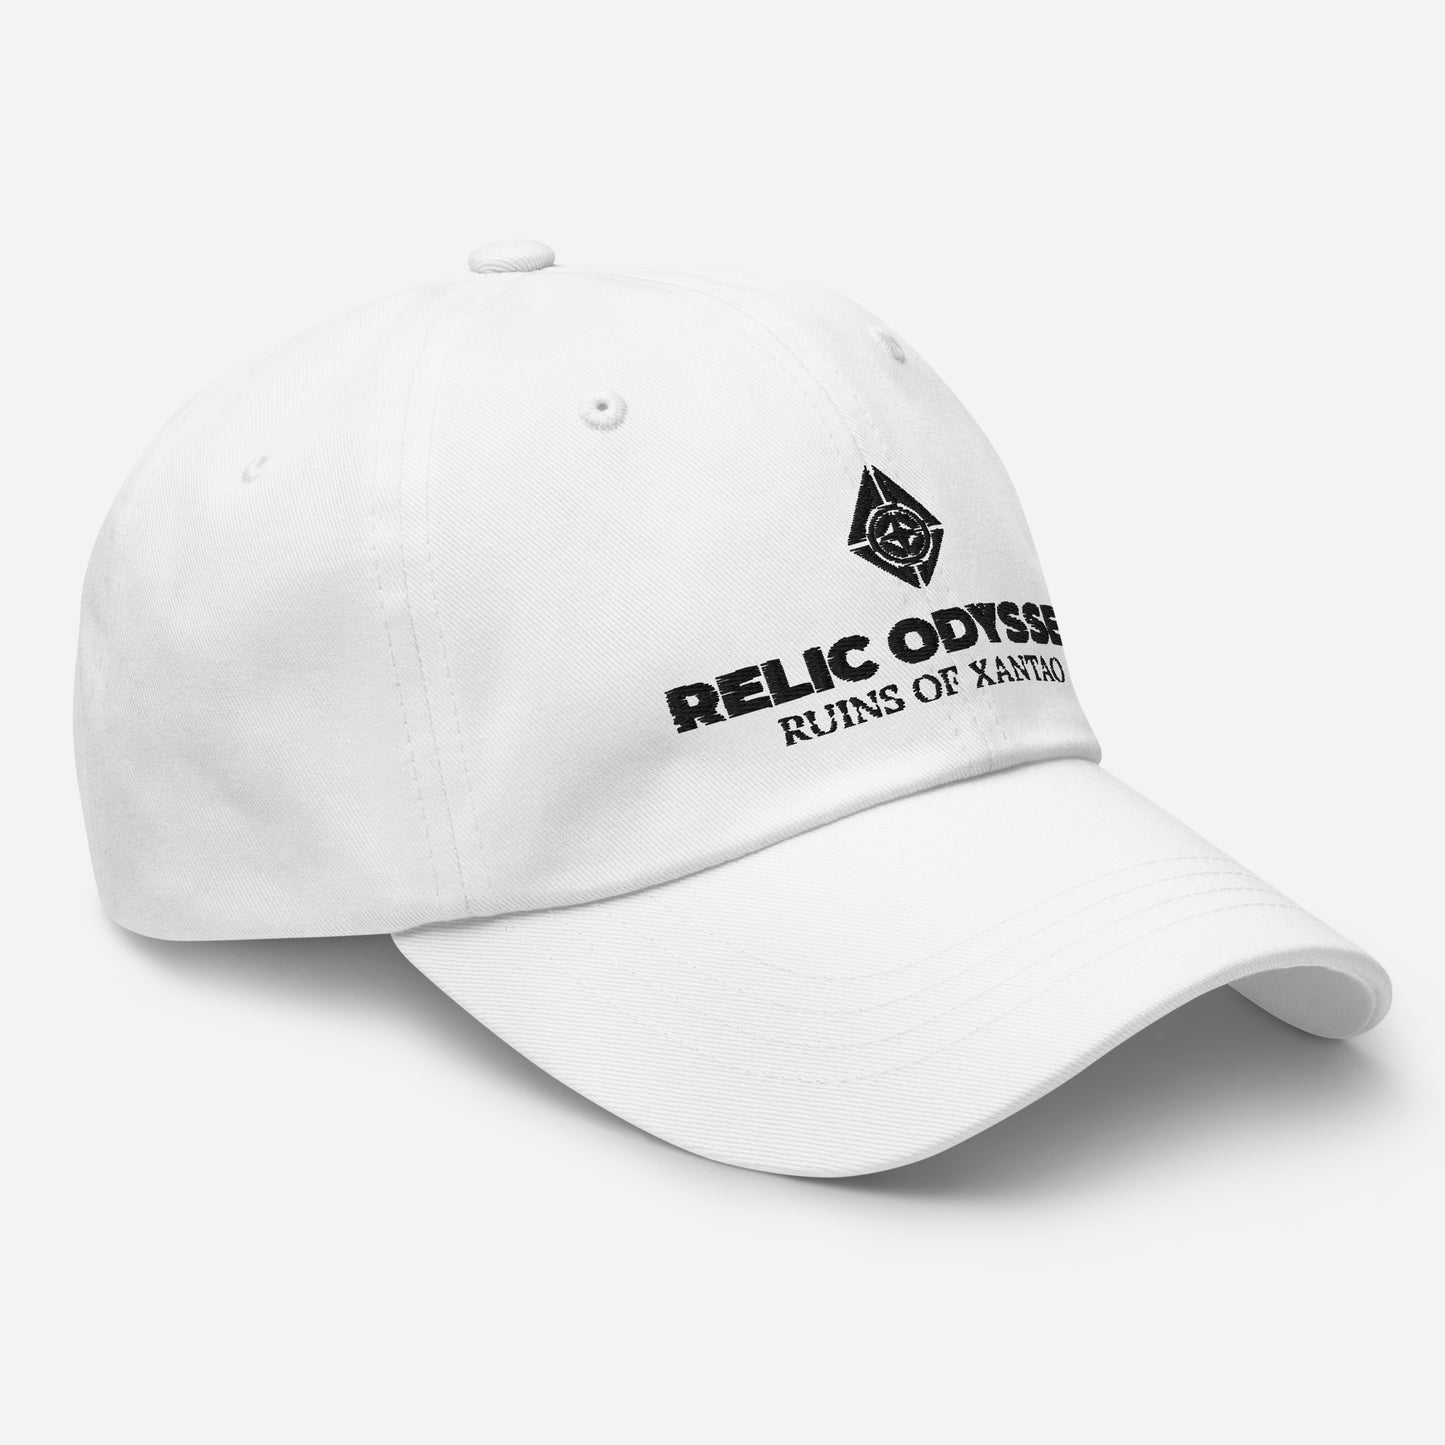 Relic Odyssey  - Cap